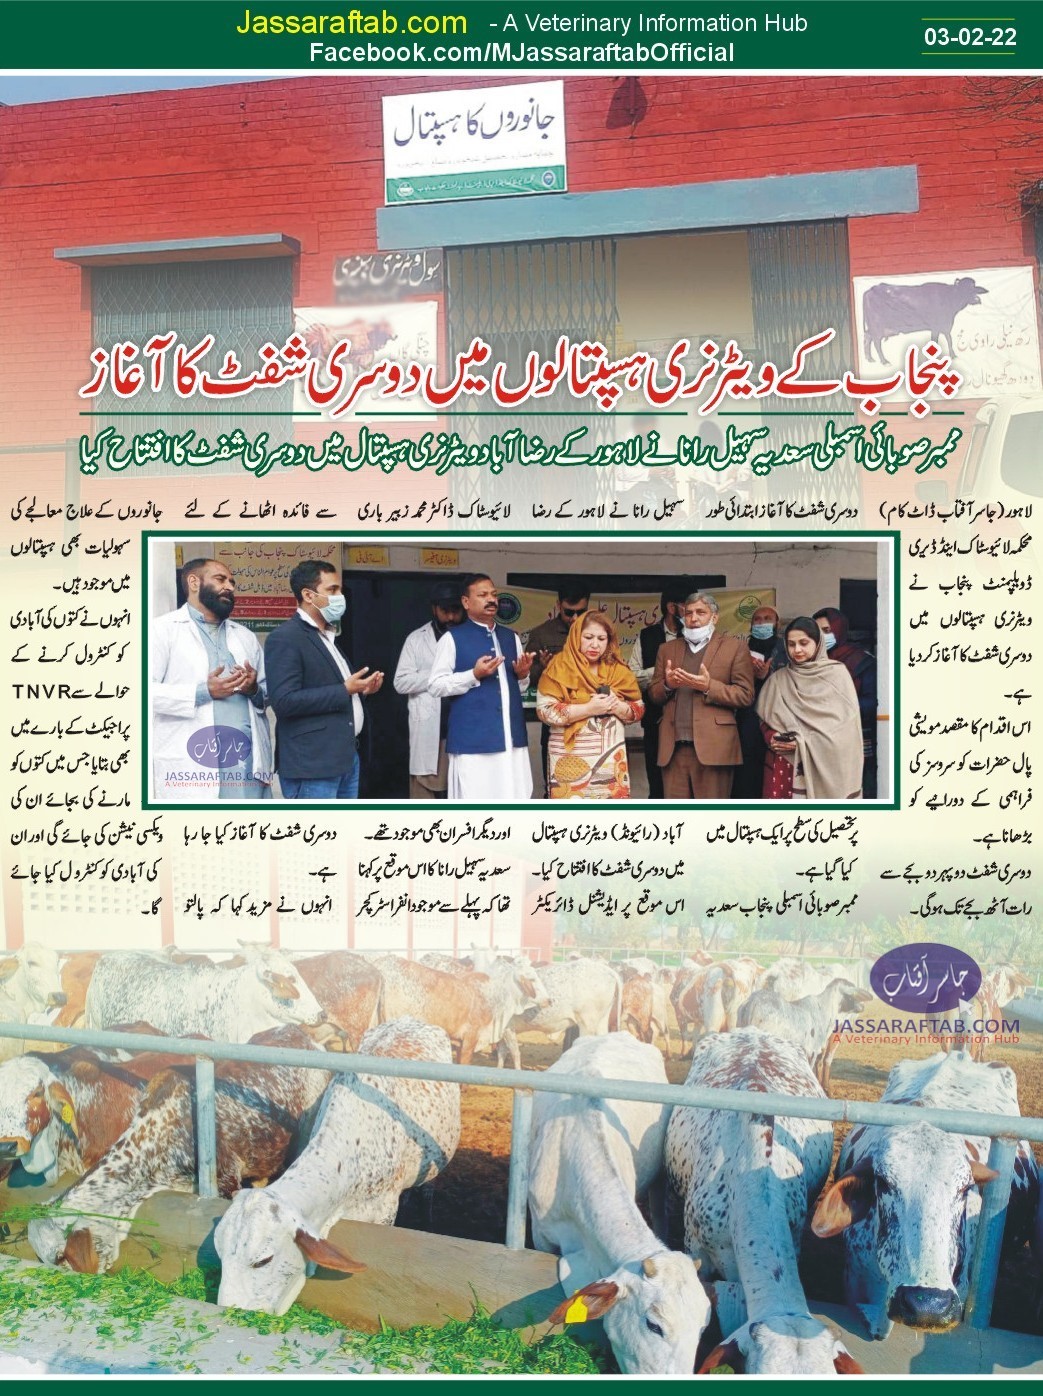 Second Shift in Veterinary Hospitals Livestock Punjab Sadia Sohail Rana inaugurated 